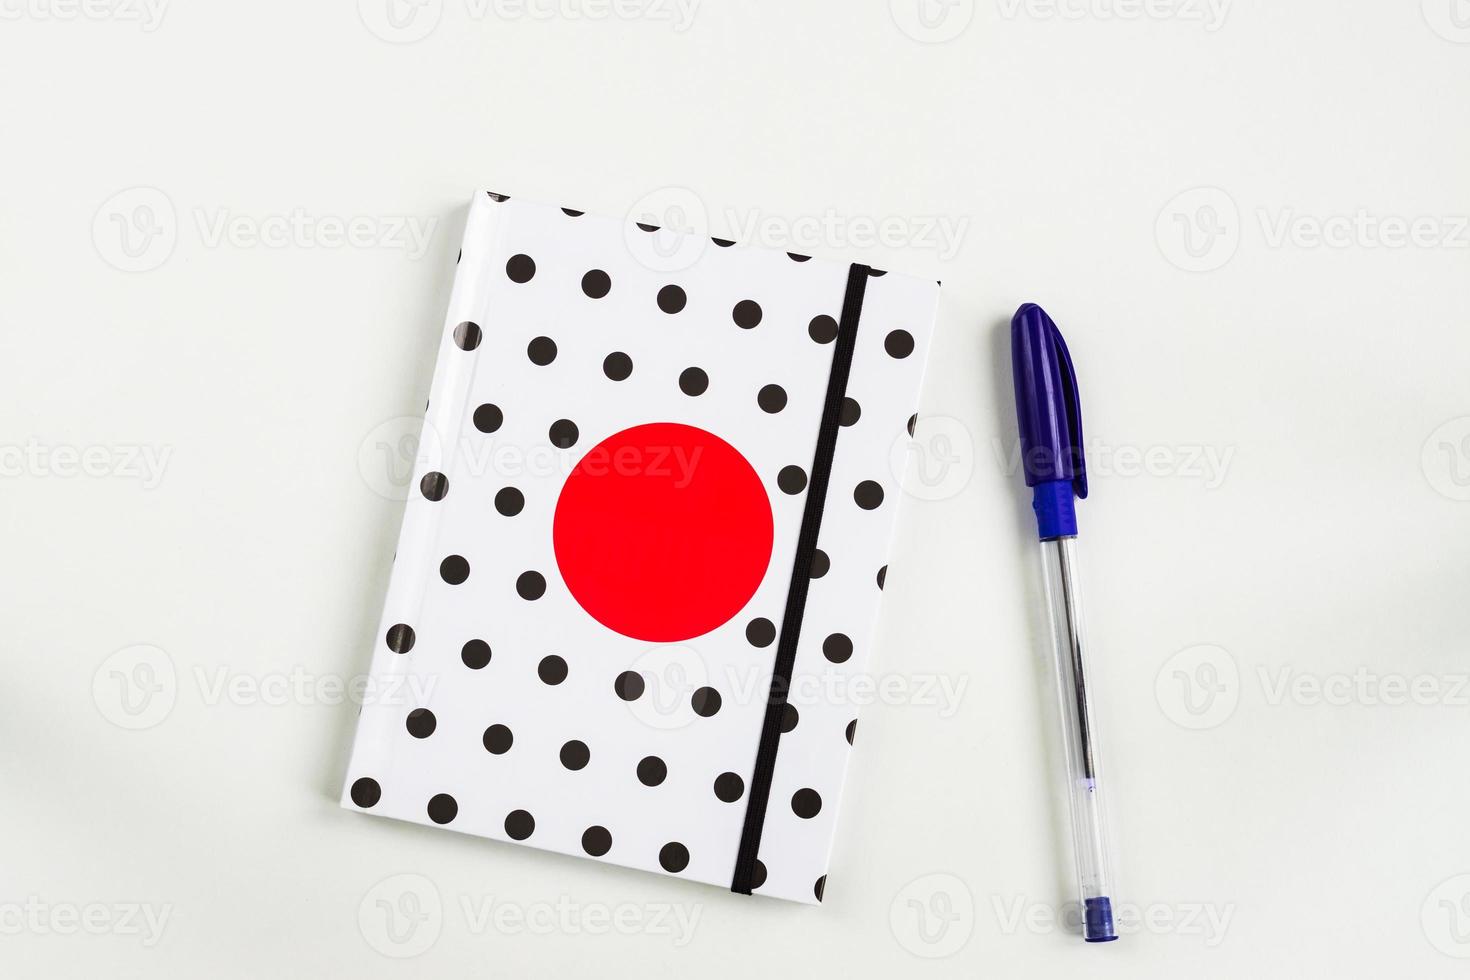 schwarz-weiß gepunktetes notizbuch mit rotem kreis auf dem cover und blauem stift auf weißem tisch. Draufsicht, minimale flache Lage foto